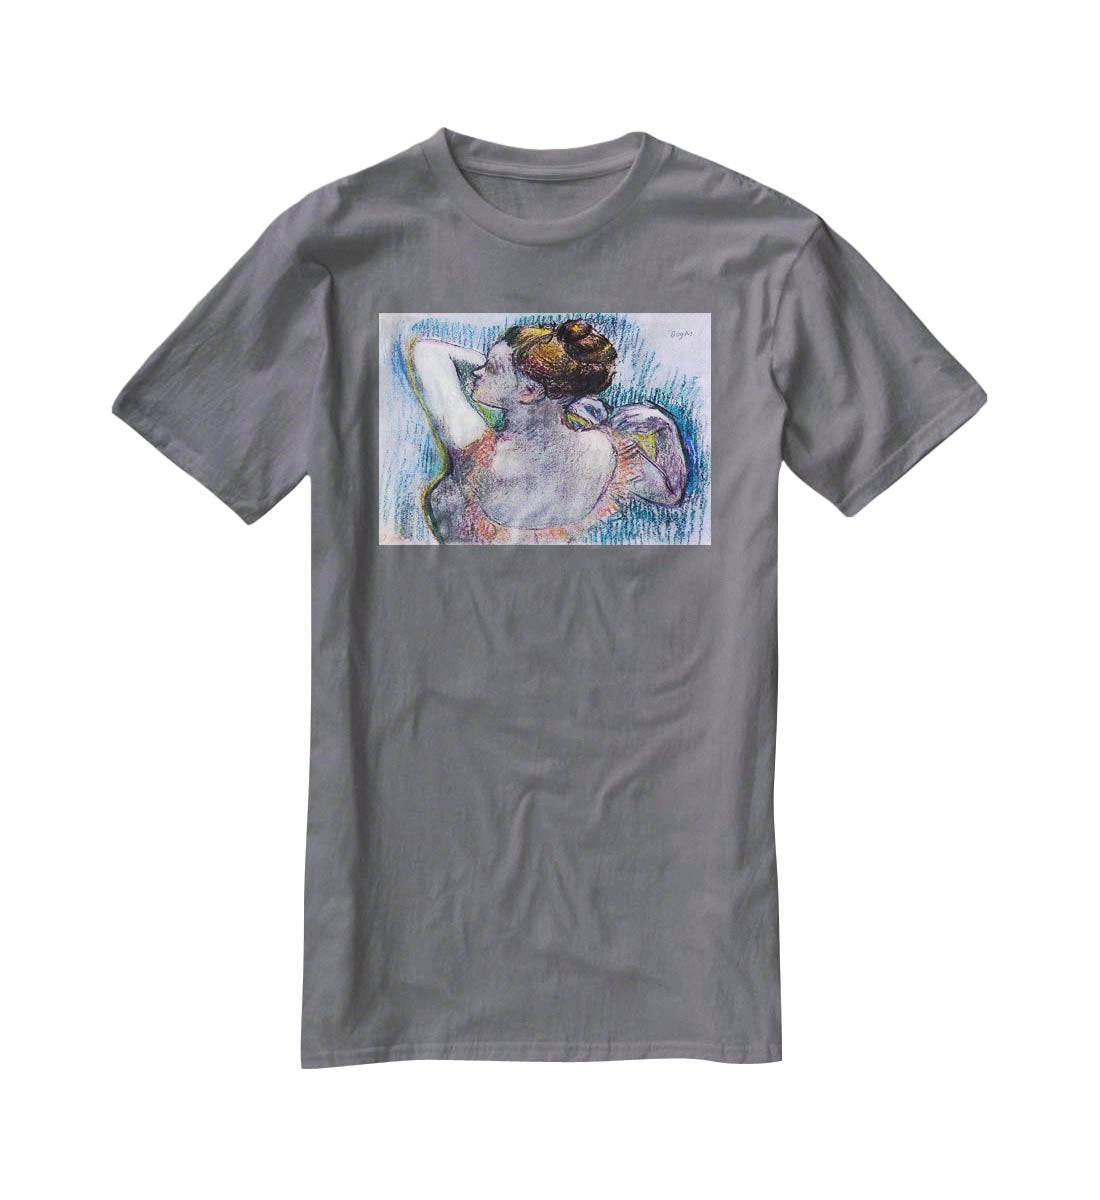 Dancer 1 by Degas T-Shirt - Canvas Art Rocks - 3